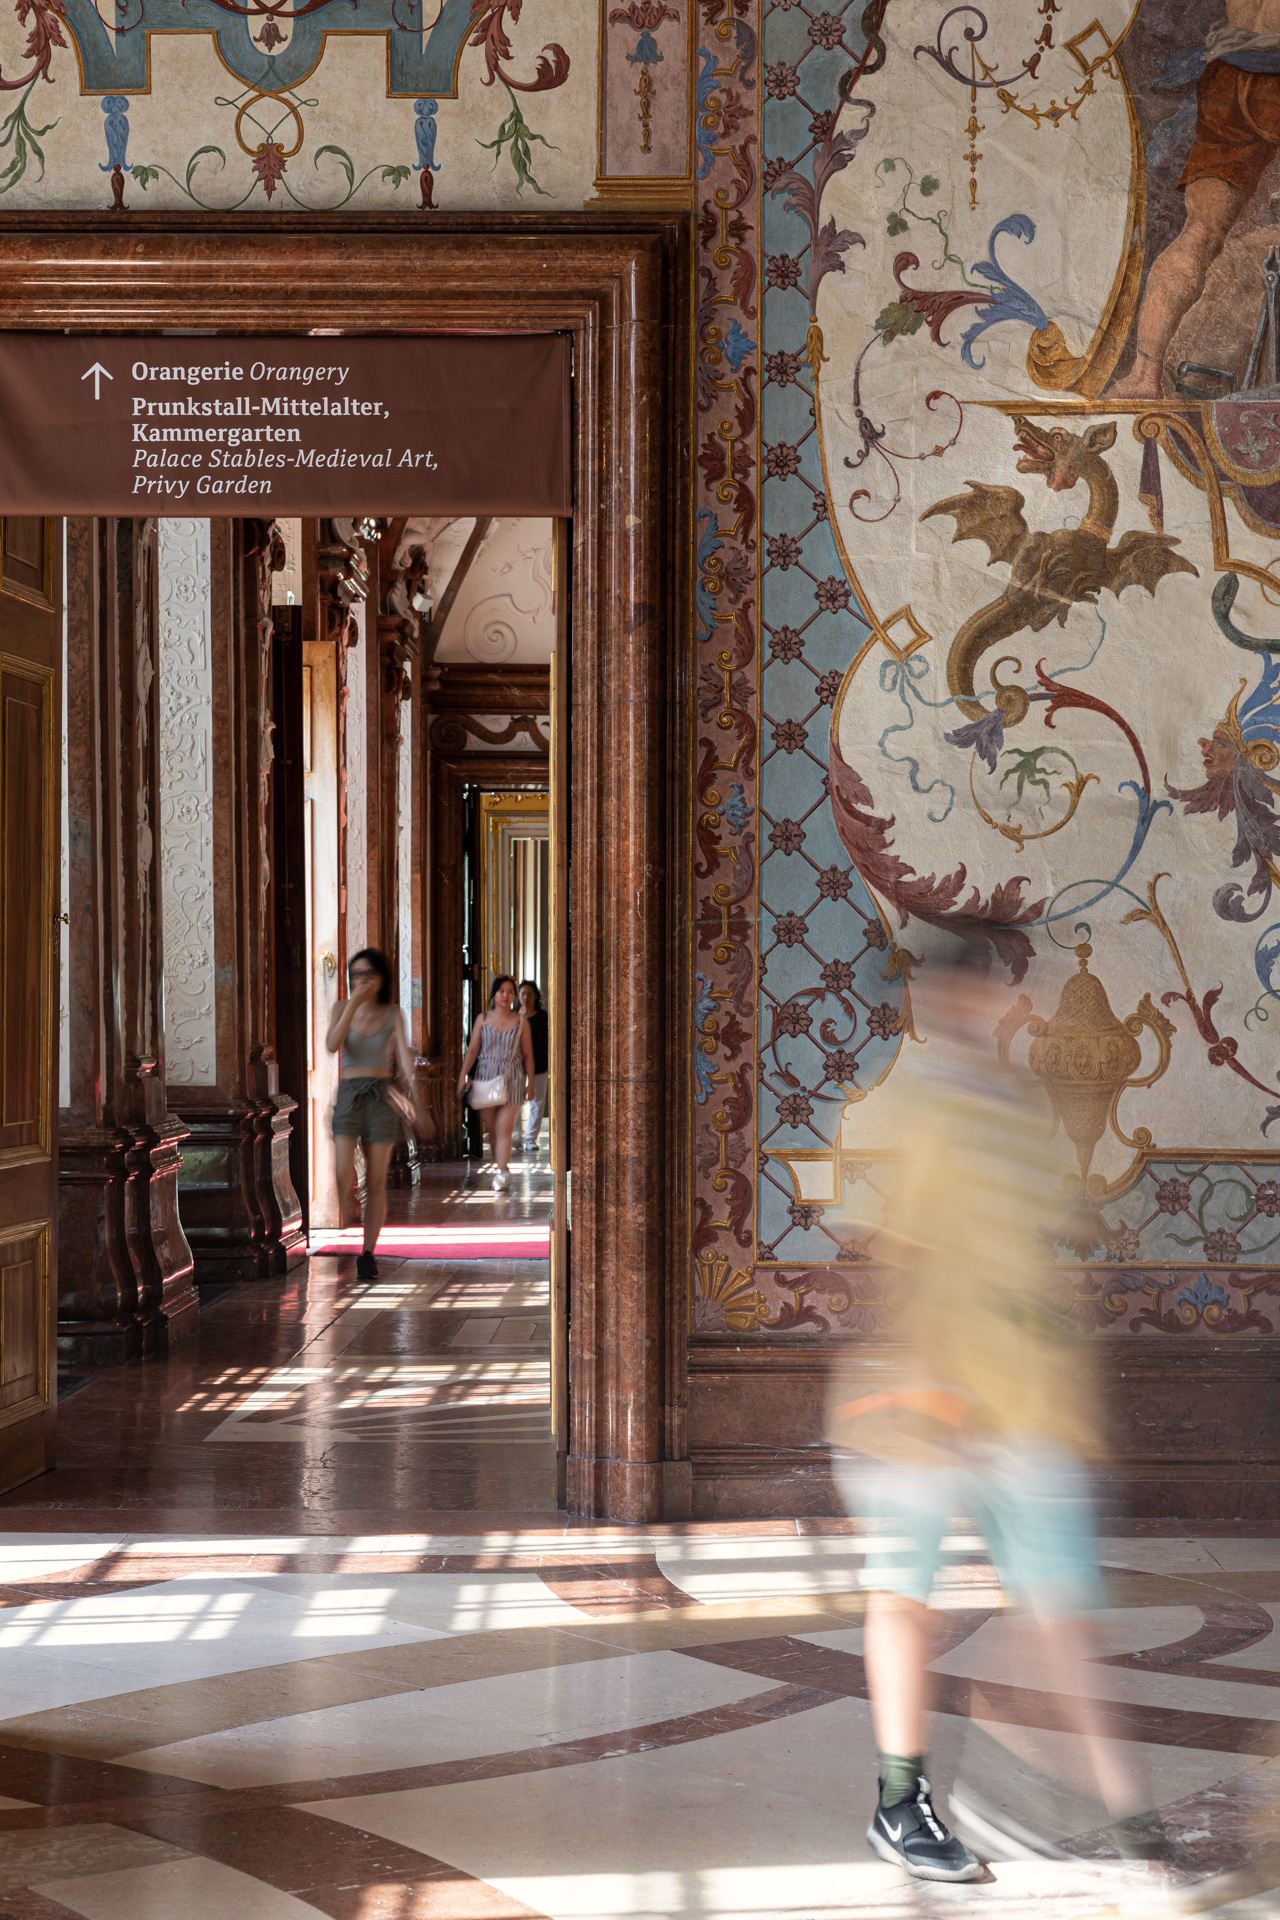 Mensch der durch die historischen Räume des Belvedere schlendert, durch einen Raum mit Wandtapete